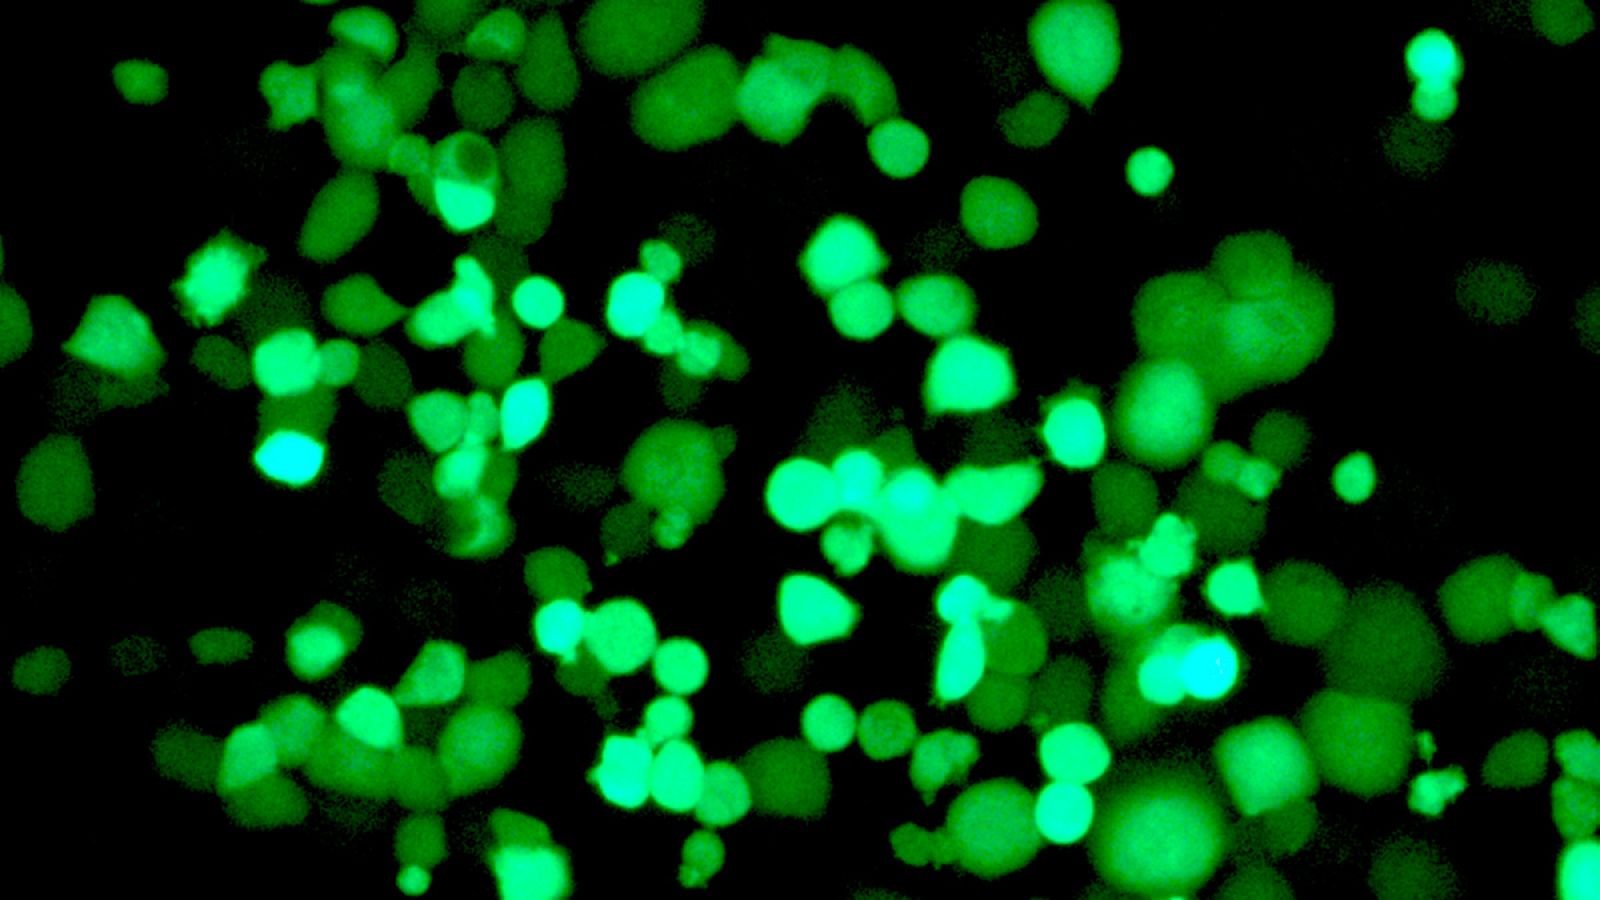 Células tumorales infectadas por el virus, que expresa una proteína fluorescente